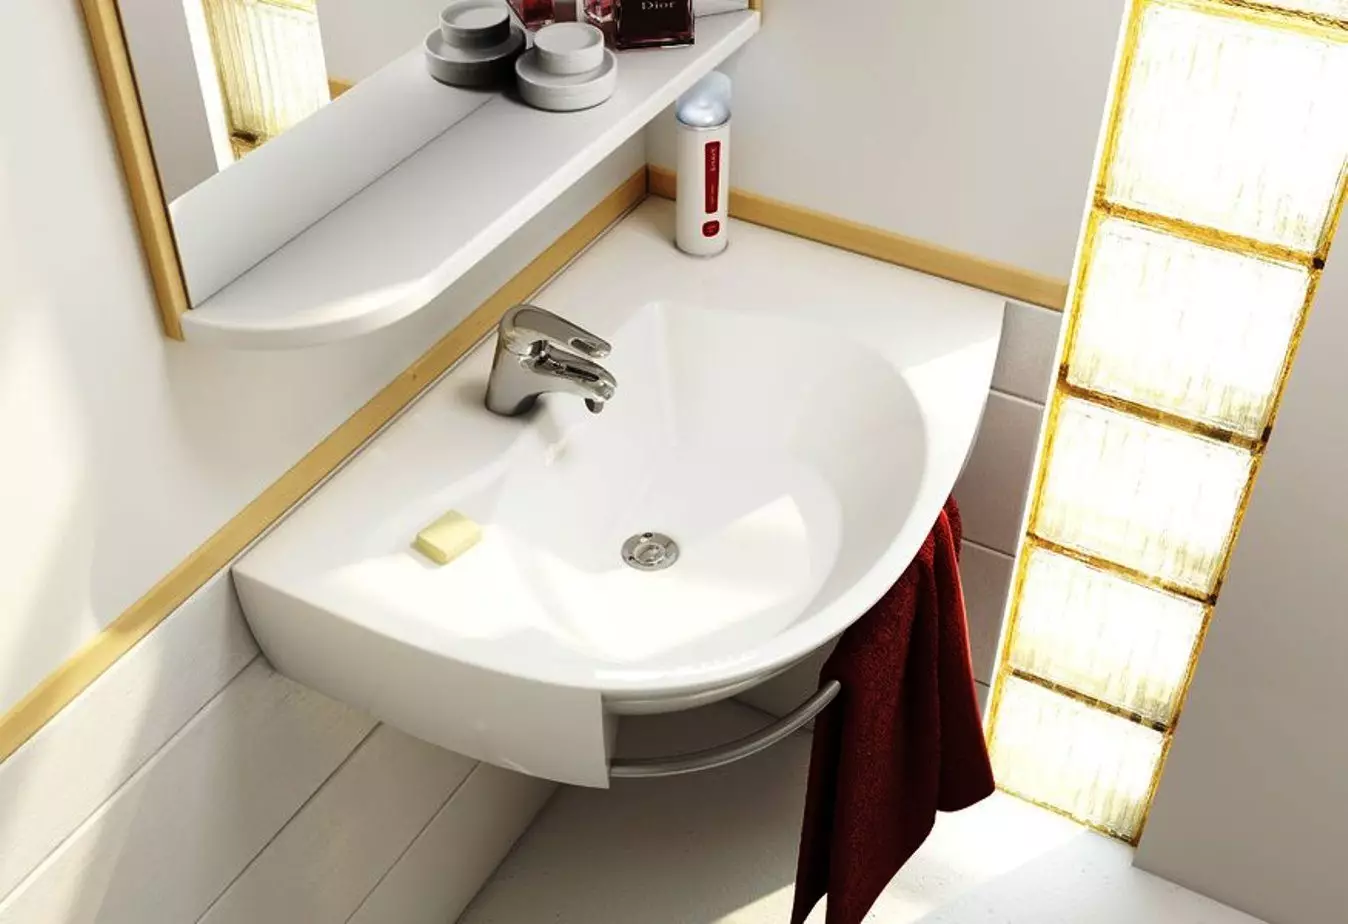 سینک معلق در حمام: دستشویی نصب شده 50-60 سانتی متر با براکت و شستشو بدون برش 55-80 سانتی متر، مدل های دیگر 21424_59